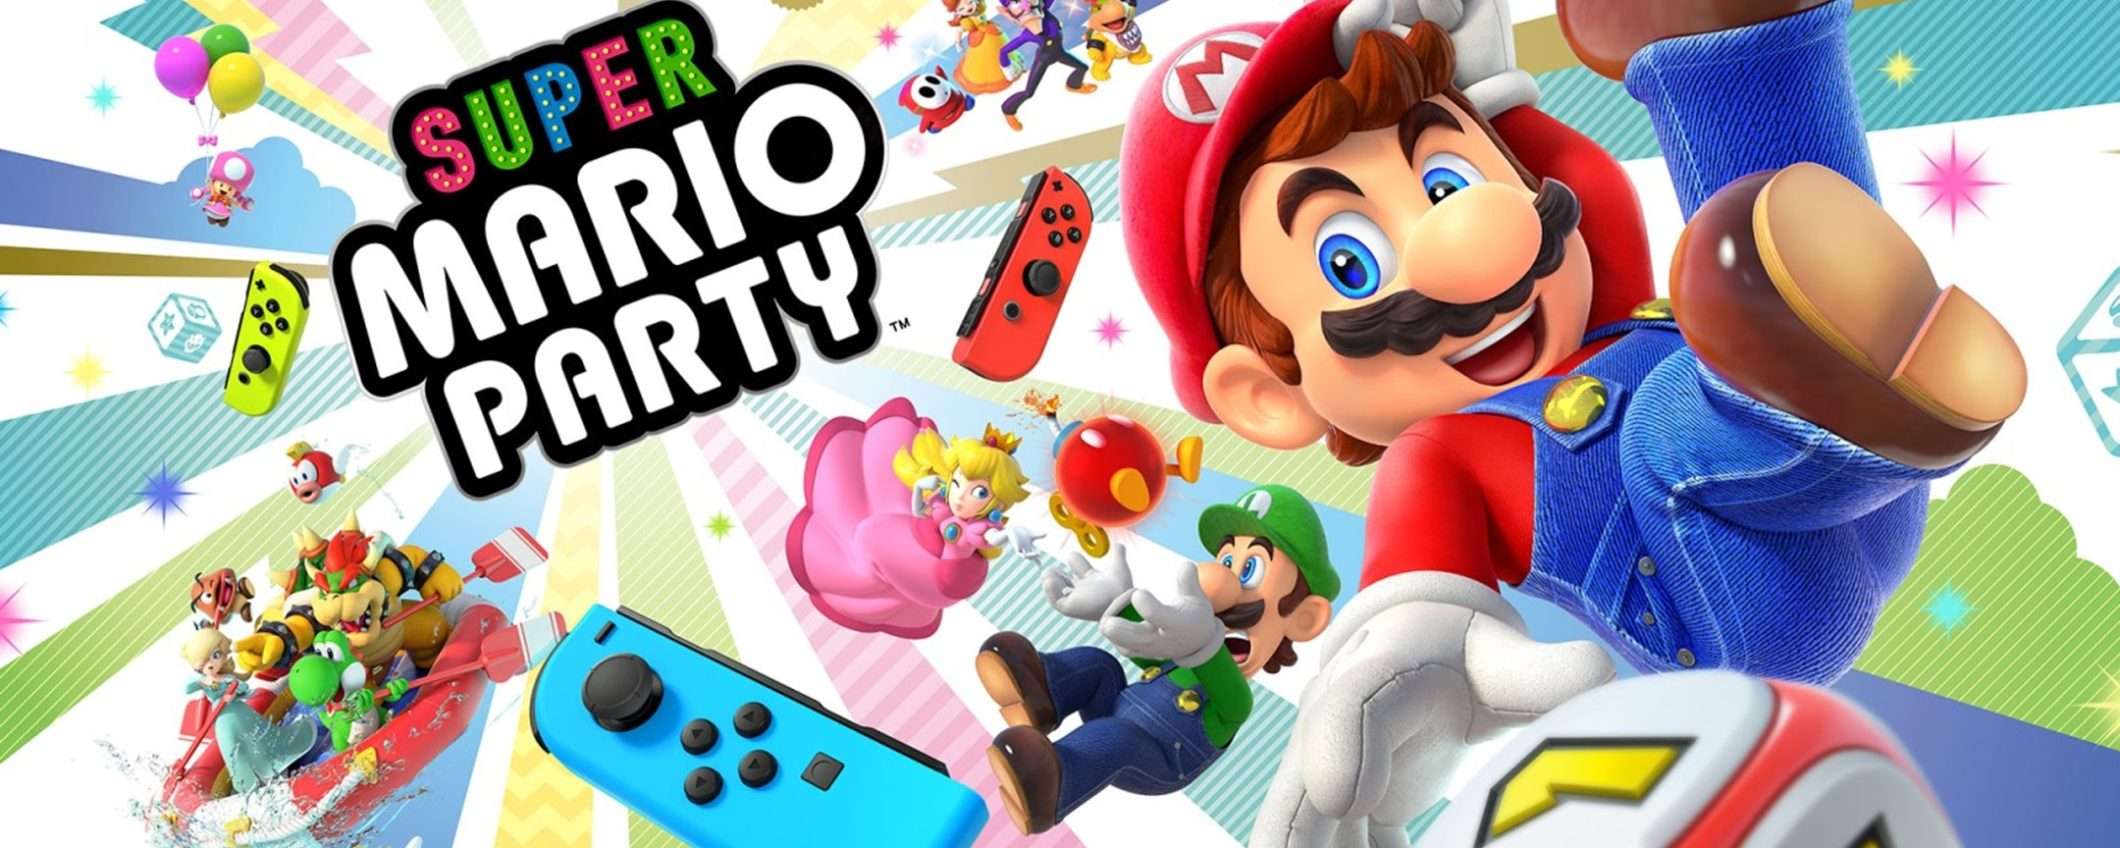 Super Mario Party per Nintendo Switch: prezzo WOW su eBay con CODICE SCONTO